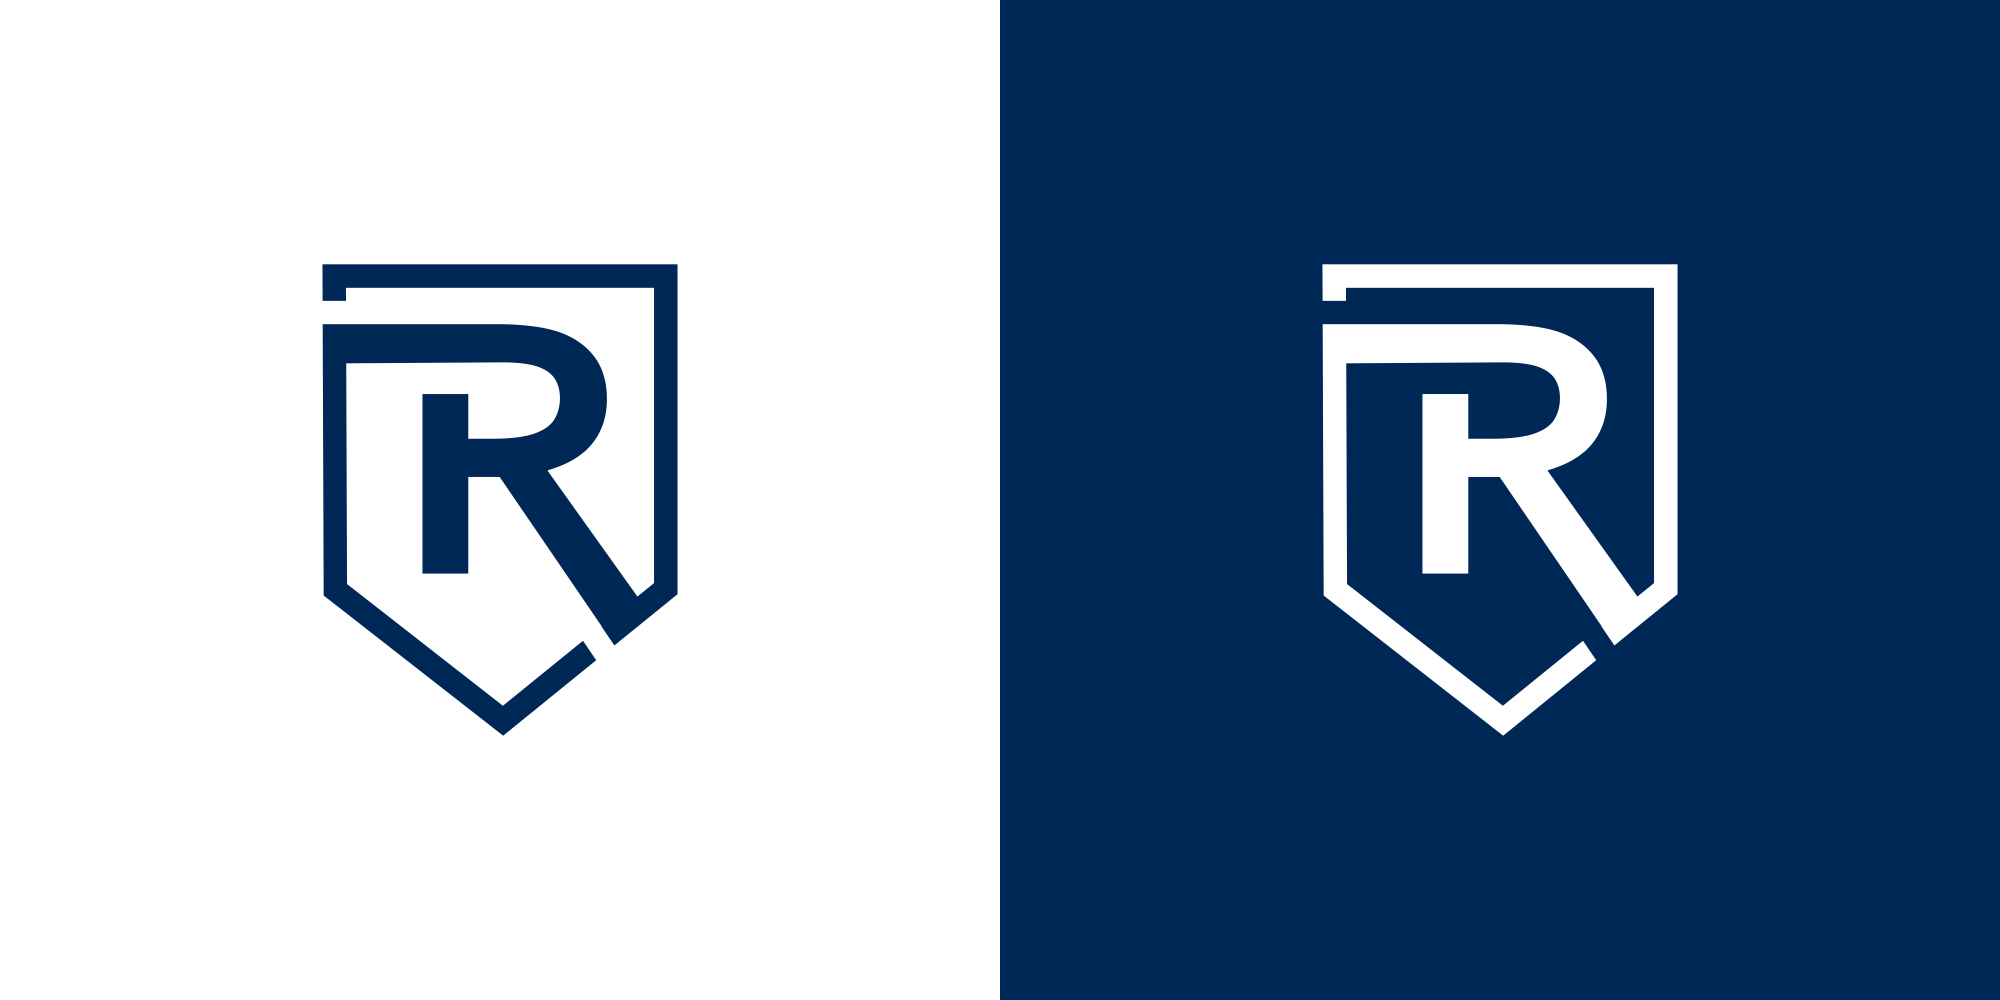 Logo-Design für Rechtsanwaltskanzlei. R im Schild als Logo.